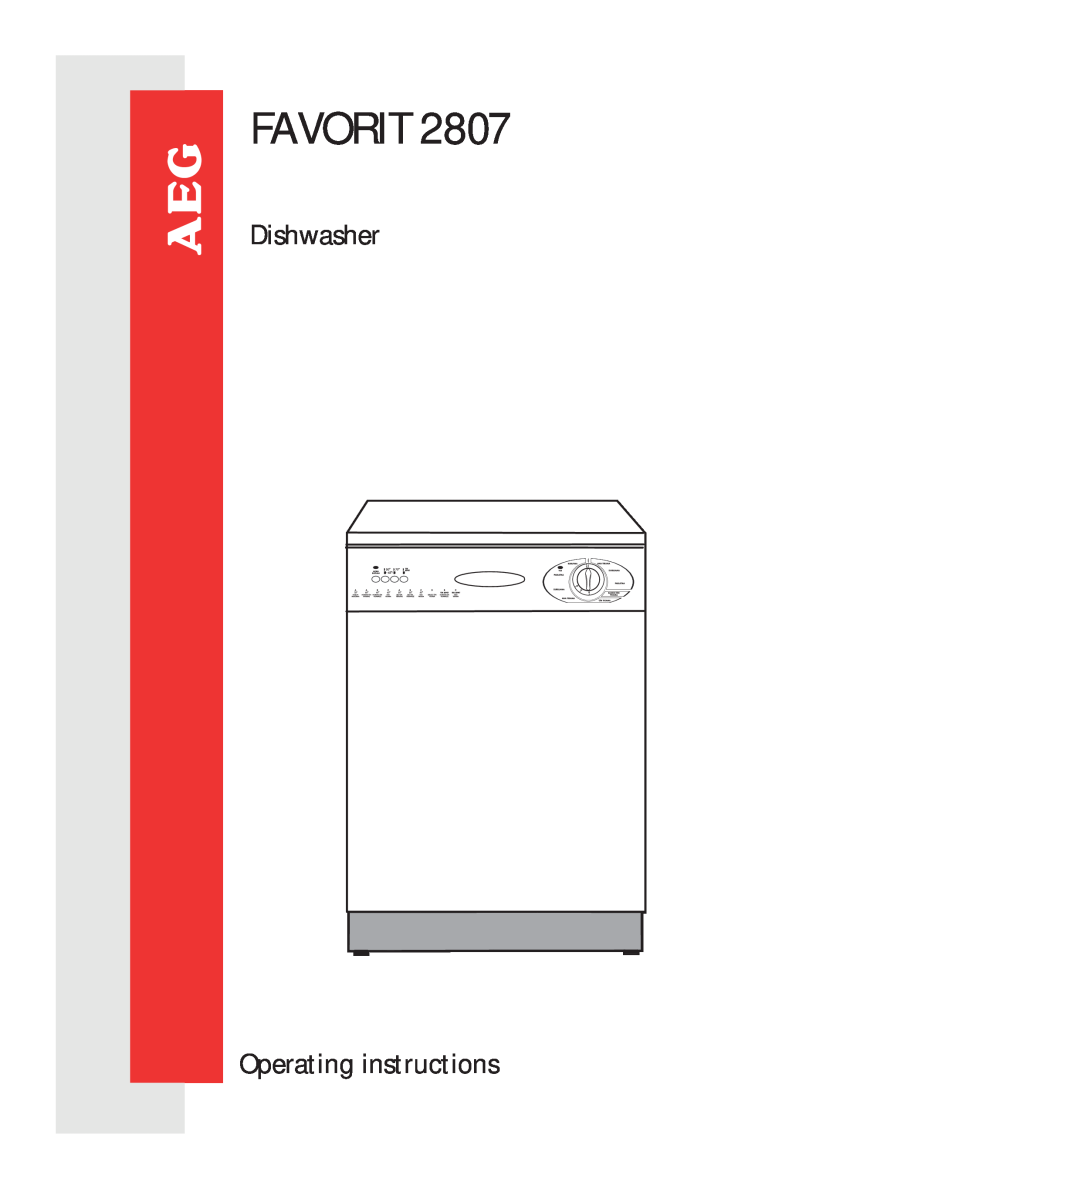 AEG 2807 manual Favorit, Dishwasher, Operating instructions 